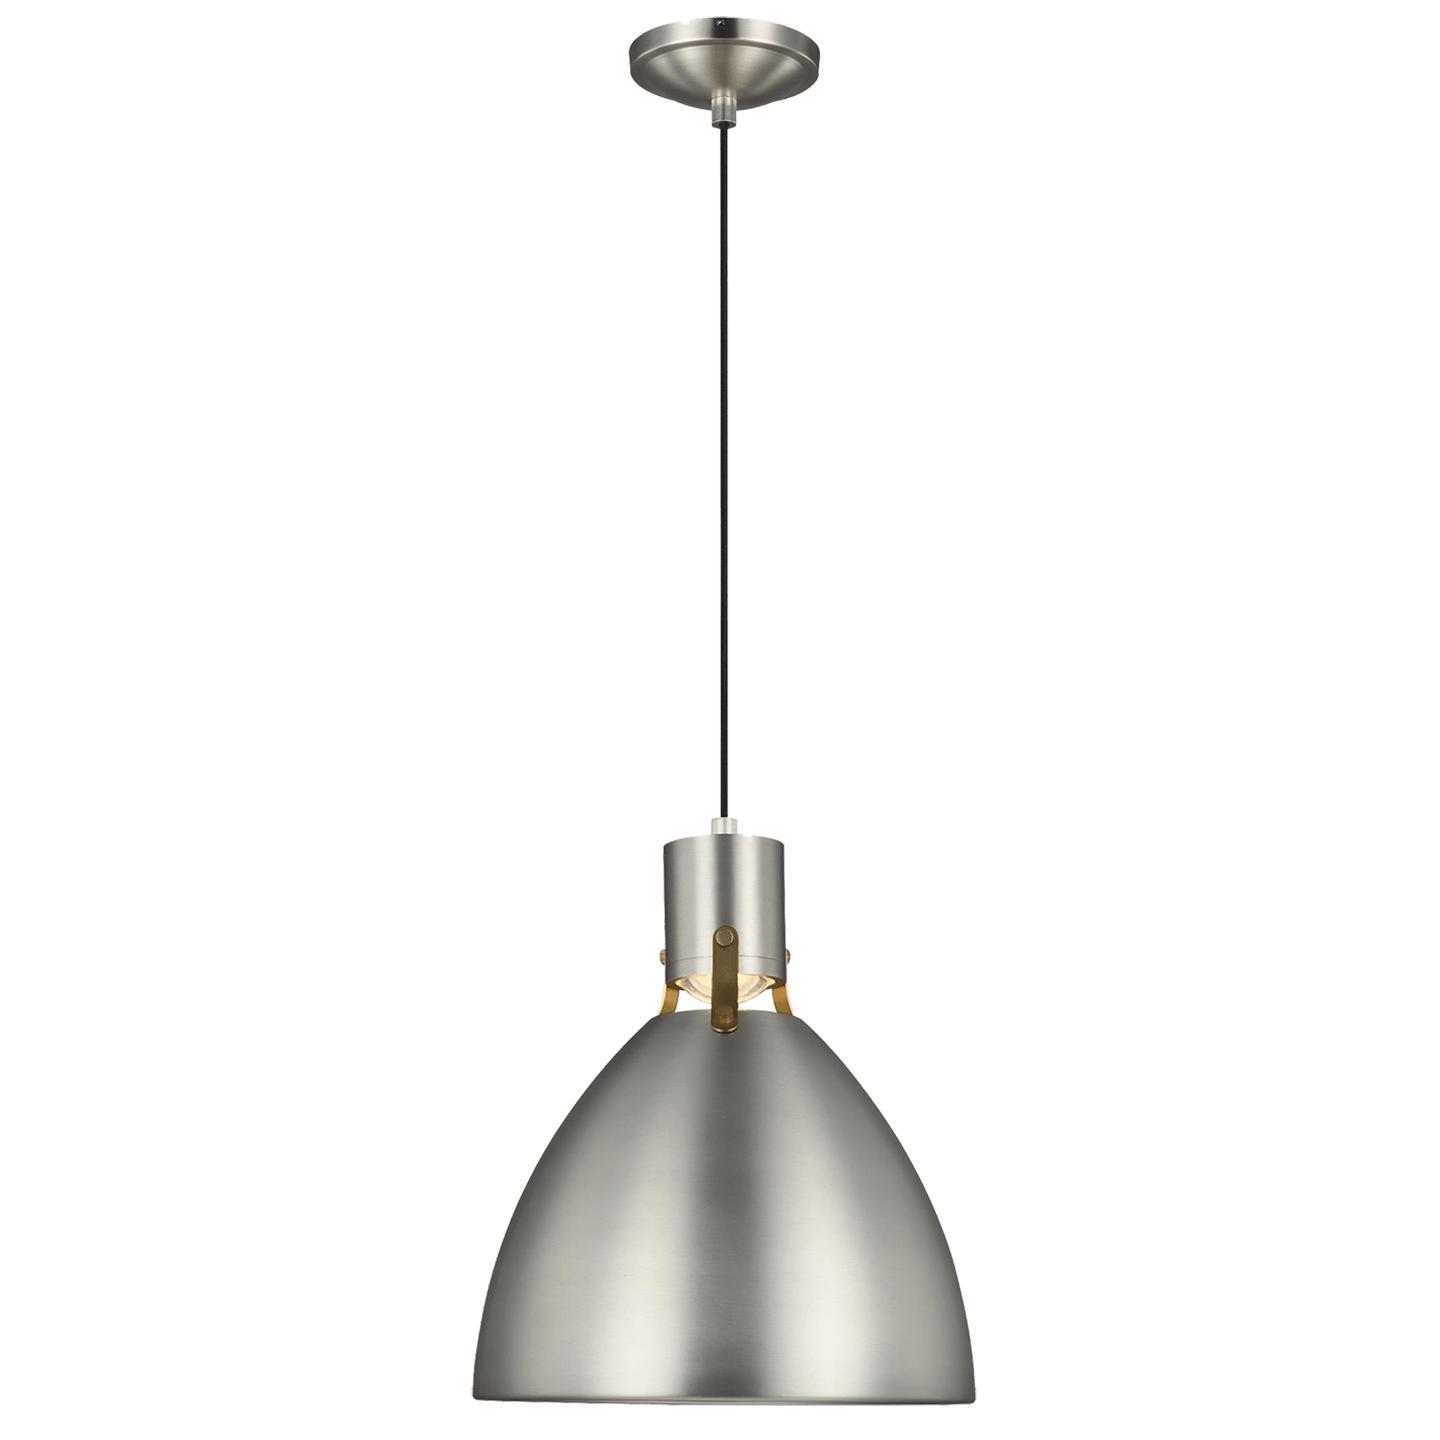 Купить Подвесной светильник Brynne Small Pendant в интернет-магазине roooms.ru